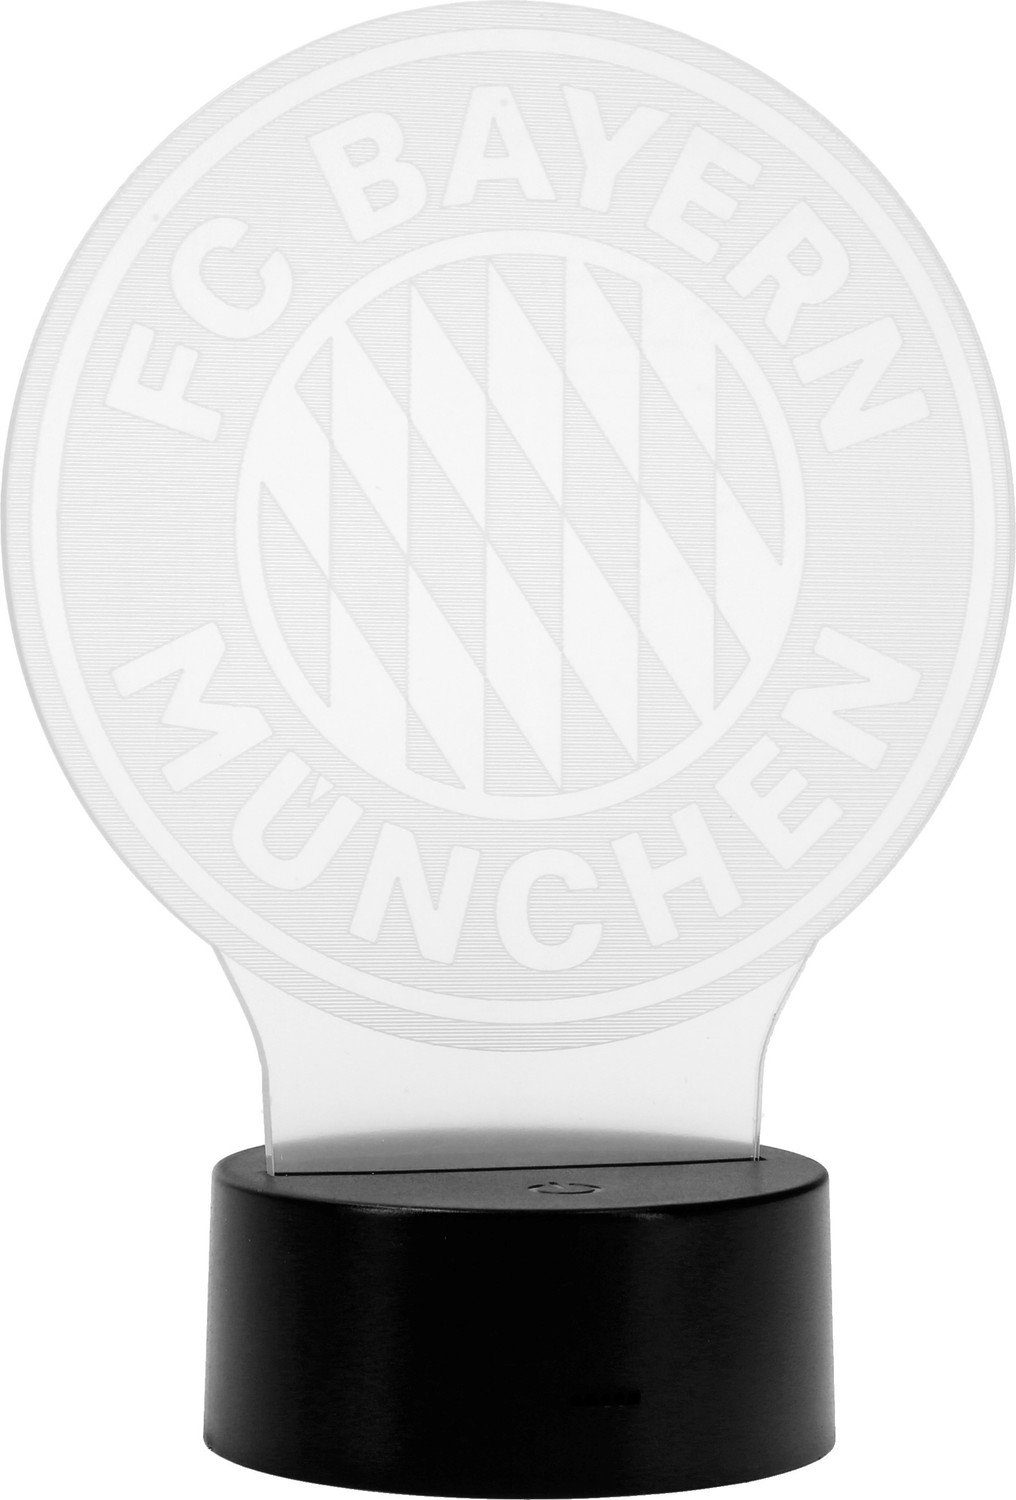 FC Bayern München LED Tischleuchte FC Logo - Bayern LED München